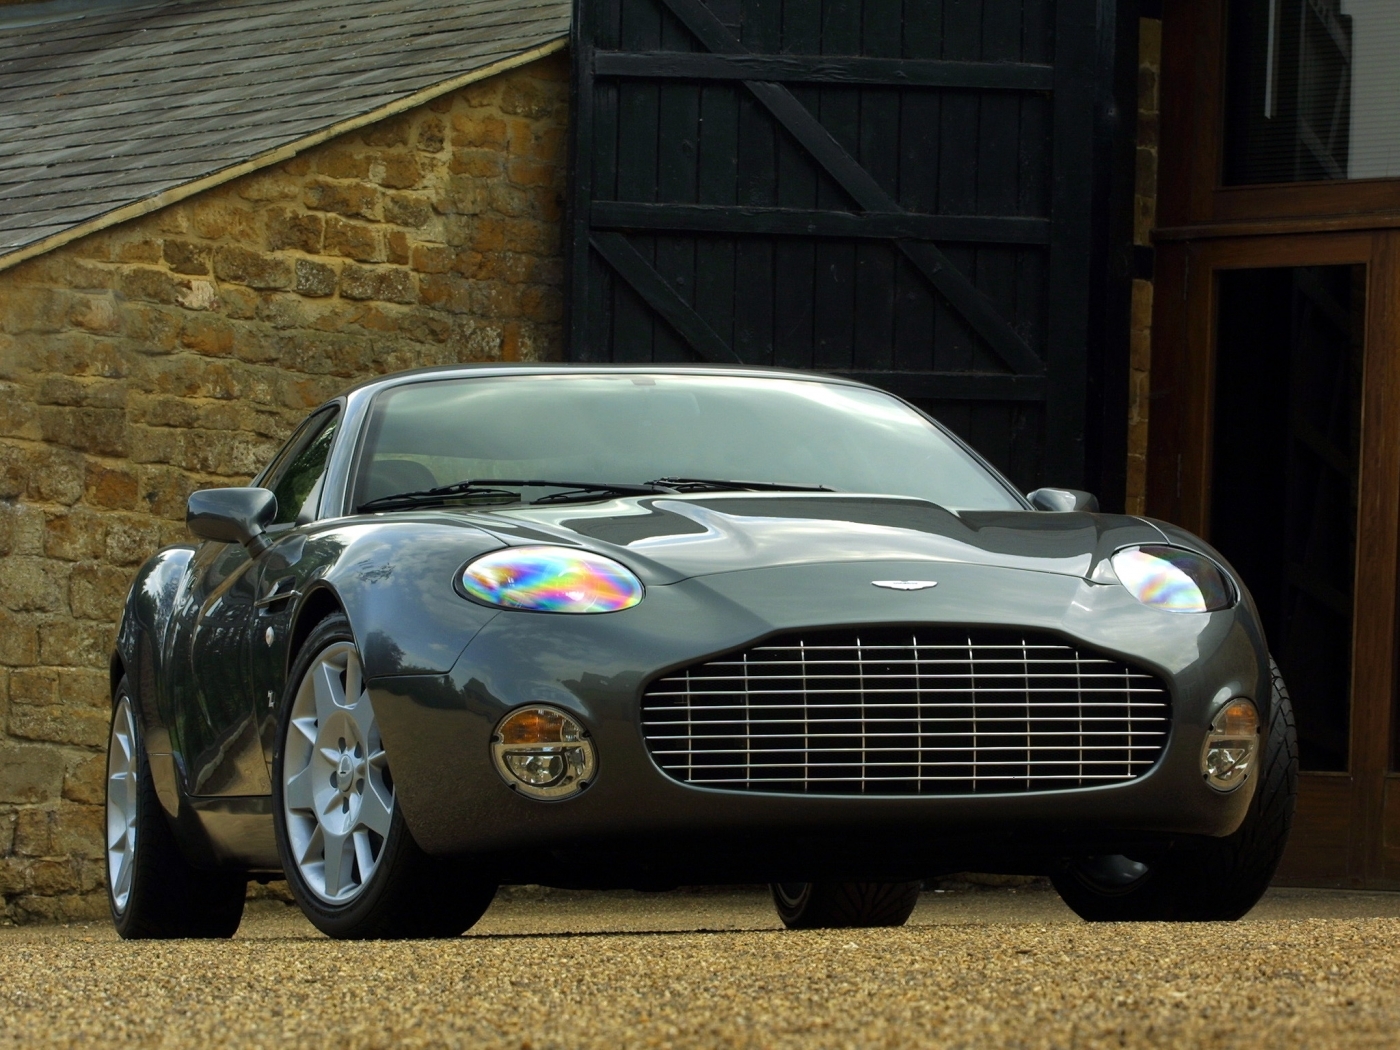 Скачать картинку Астон Мартин (Aston Martin), Транспорт, Машины в телефон бесплатно.